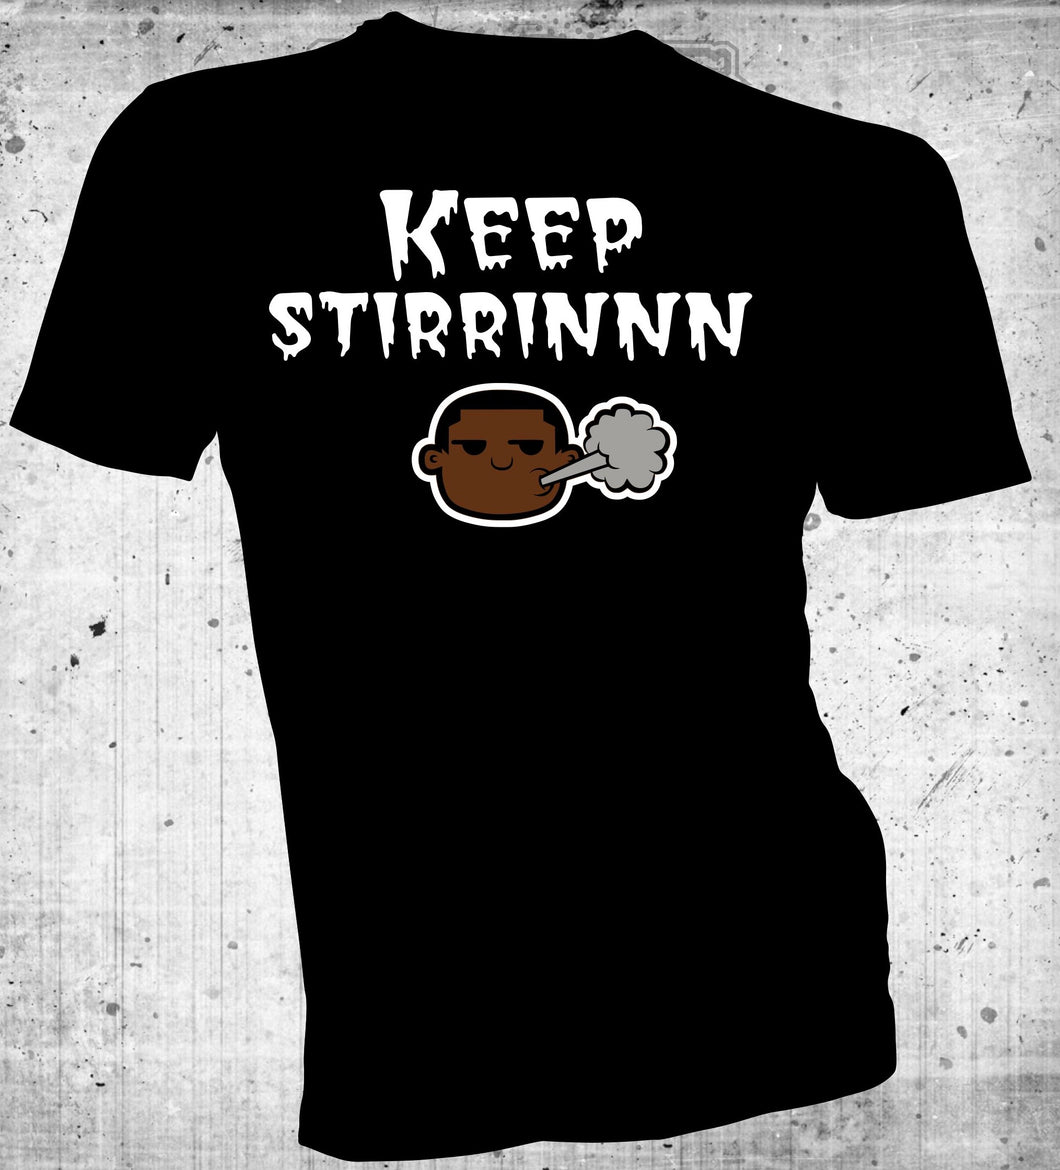 Keep Stirrinnnn (T-Shirt)